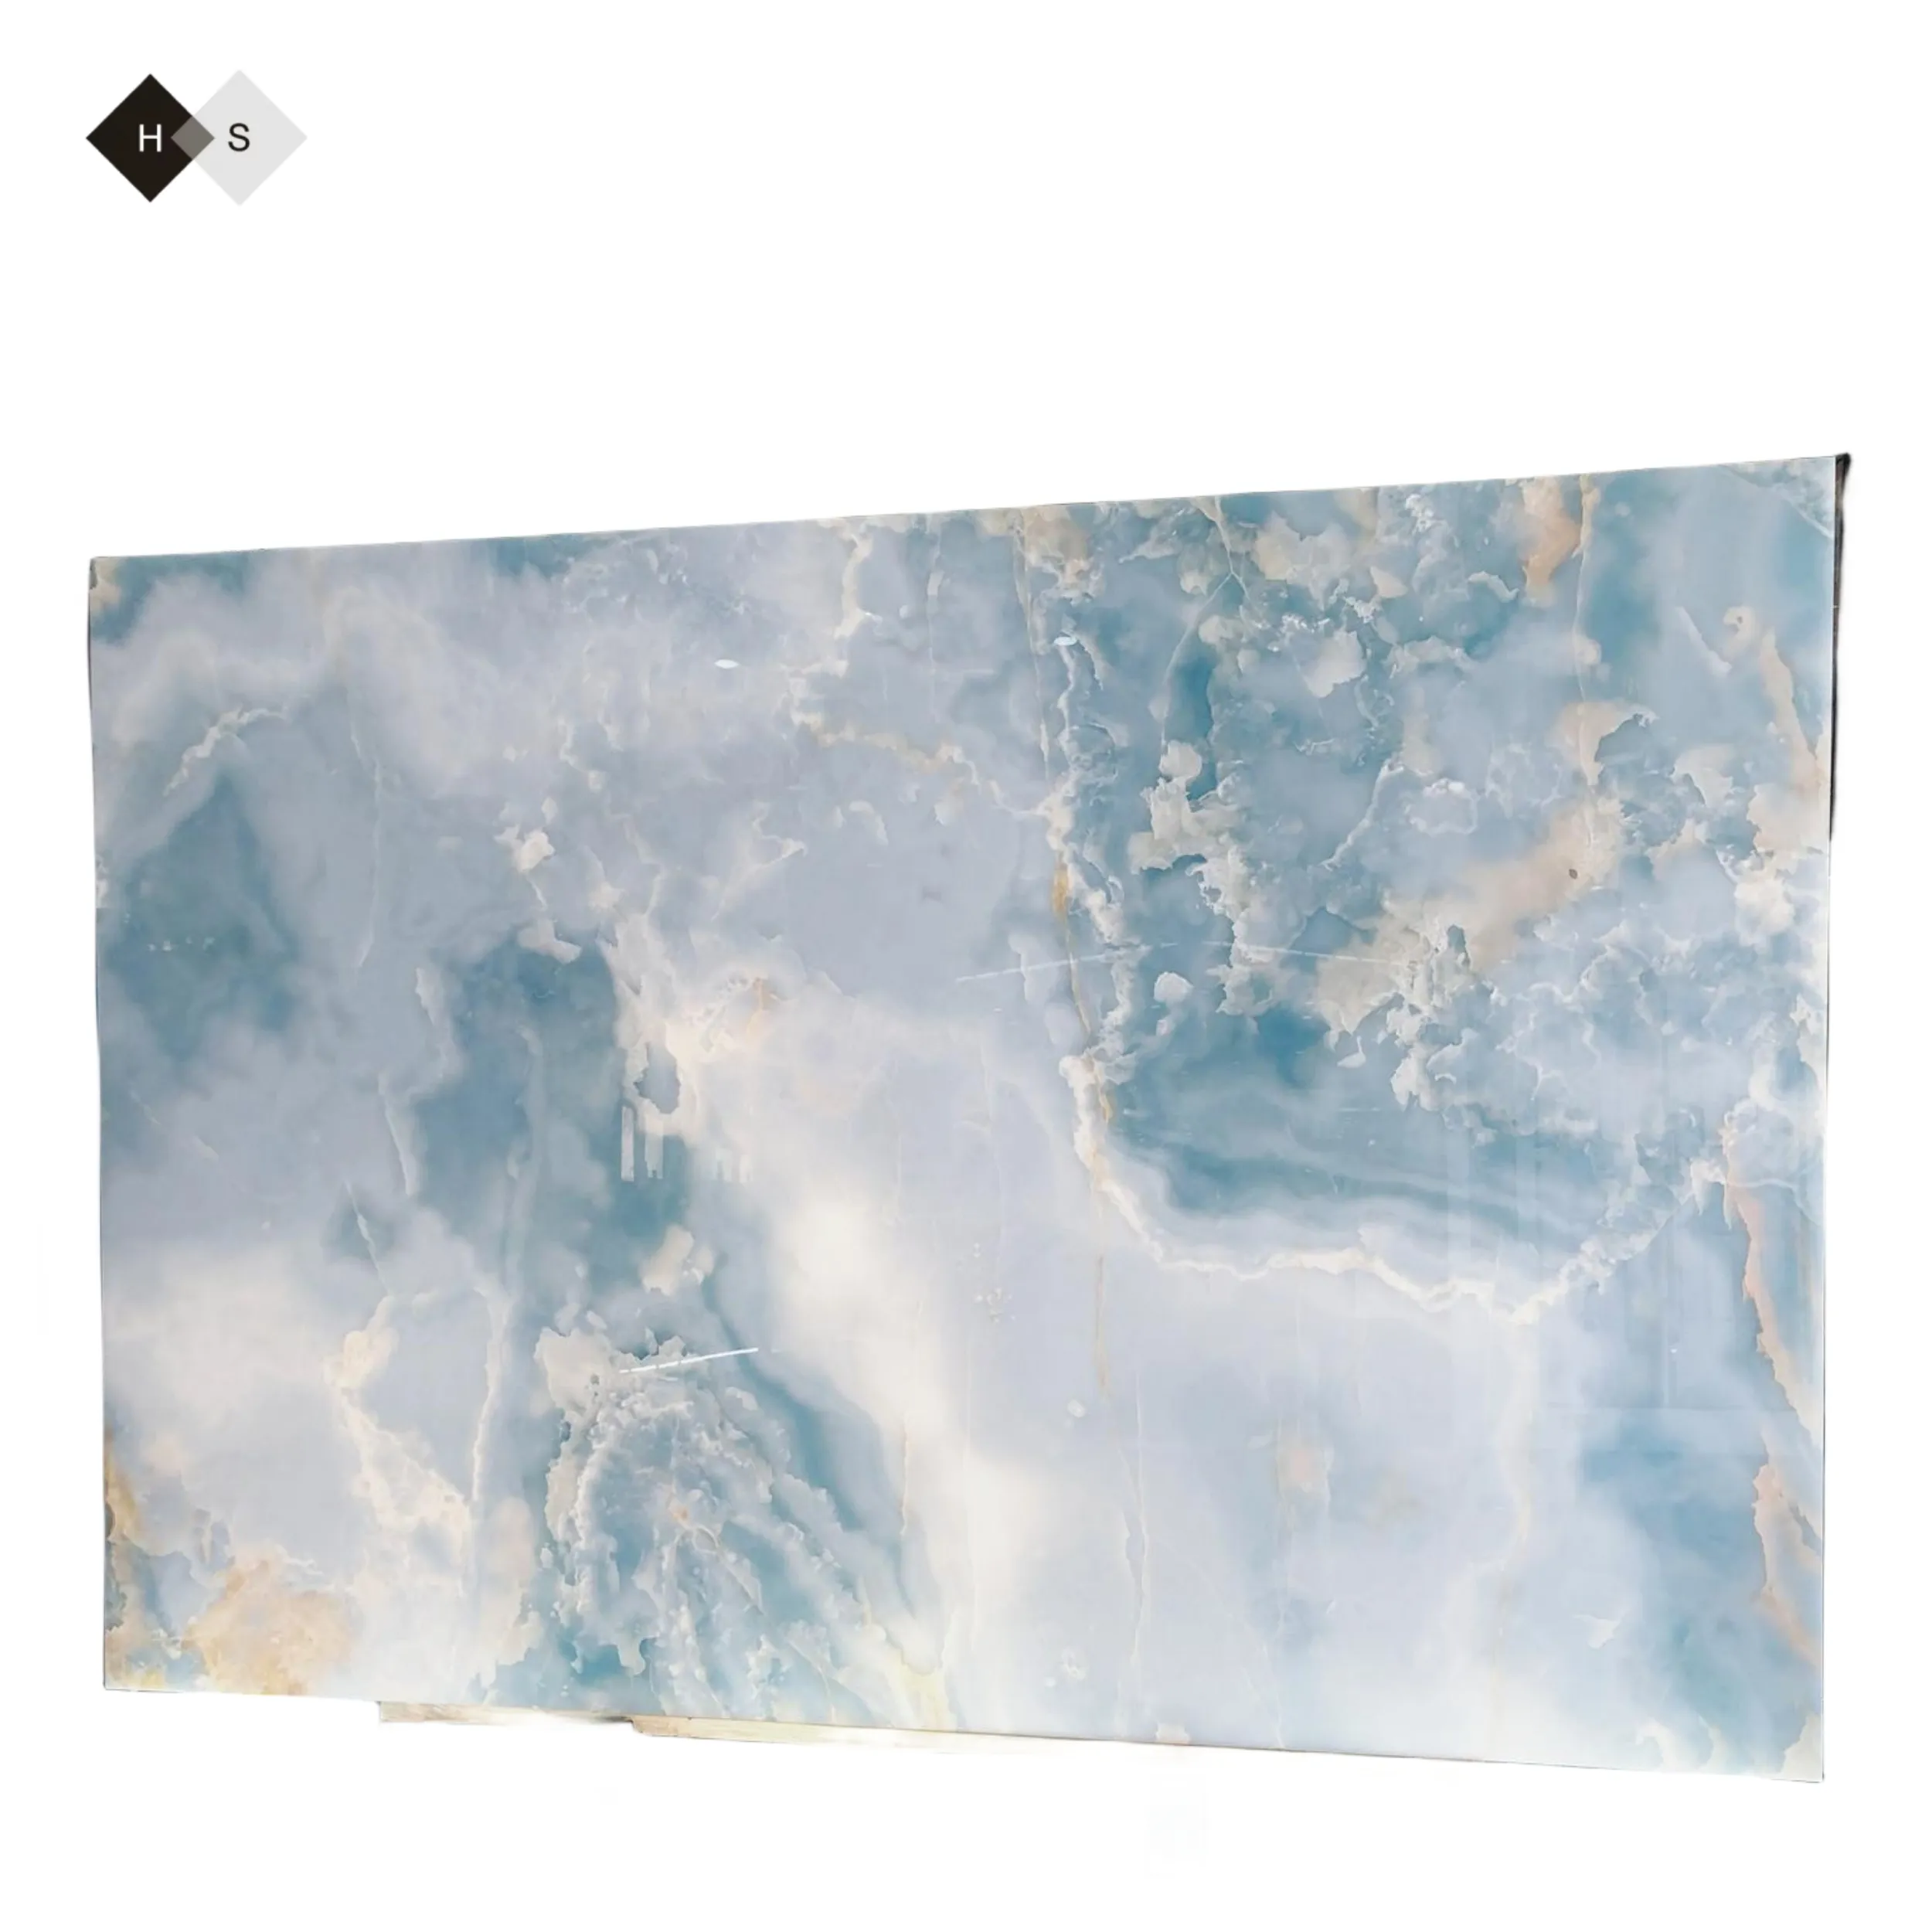 ألواح جدارية رخام أونيكس خلفية جدارية رخيصة طبيعية أبيض بالأوردة رخام أونيكس عصري بألوان زرقاء